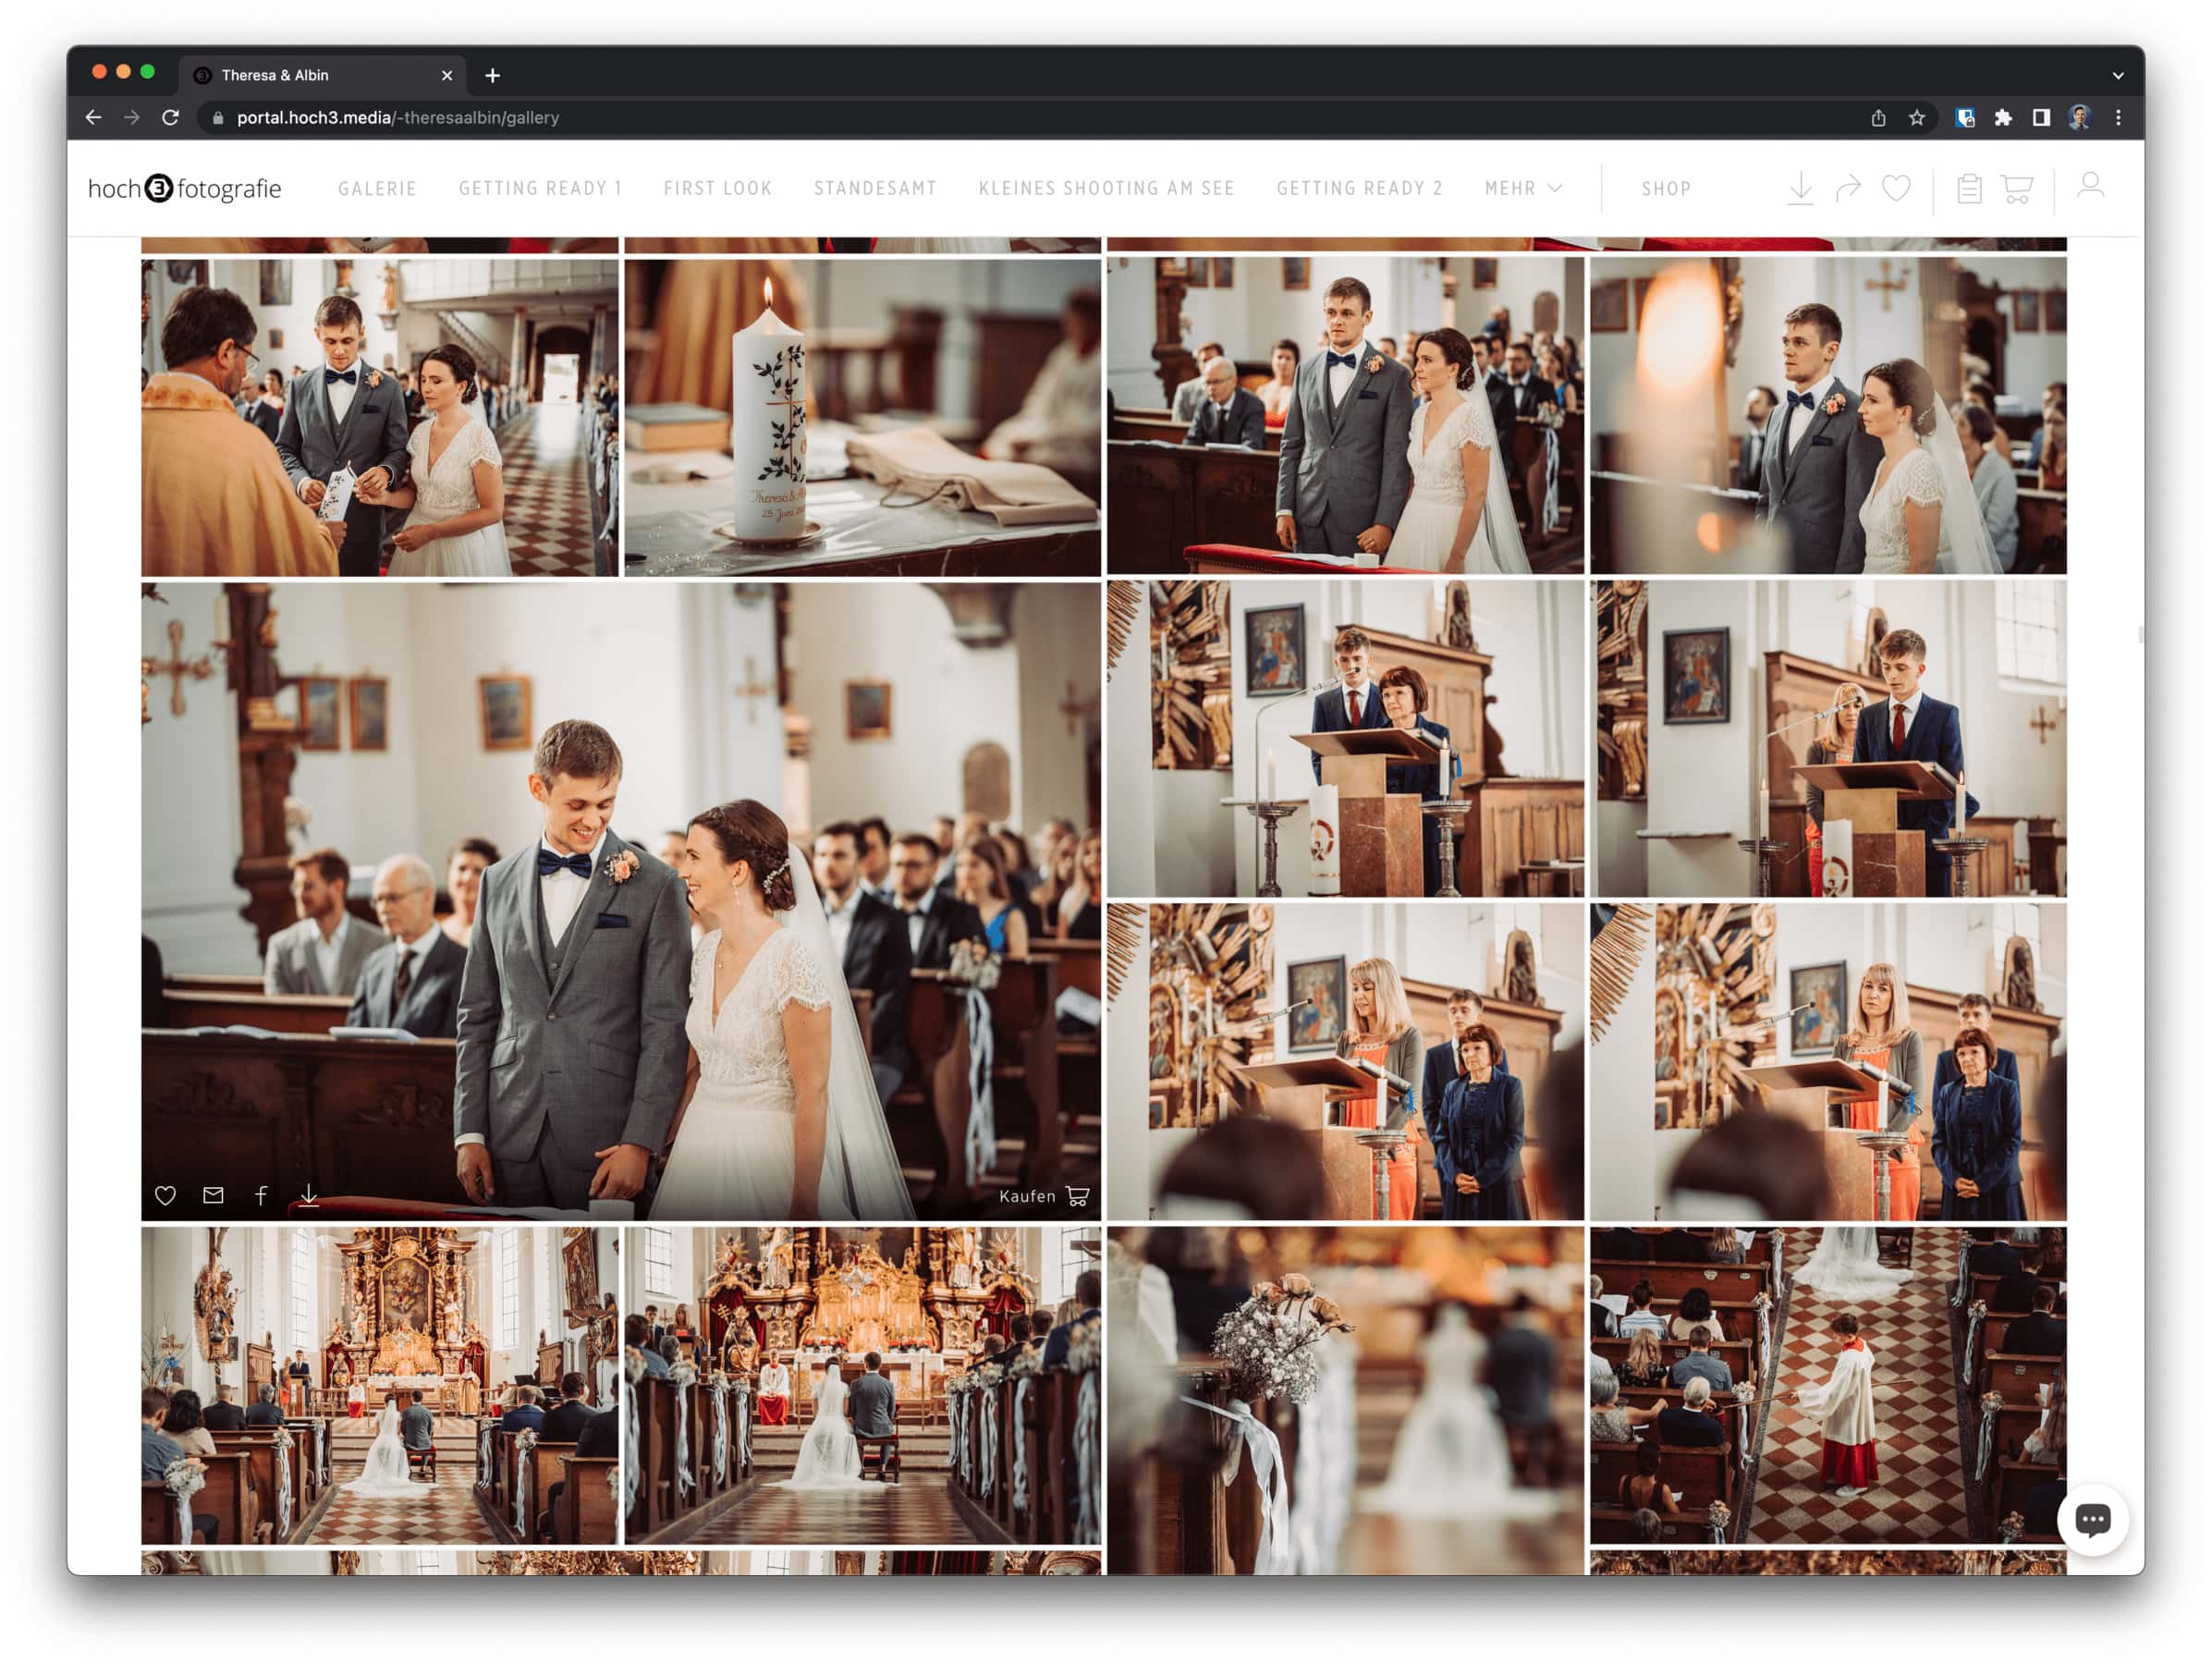 Bildschirmfoto von einer Online Galerie der Hochzeit